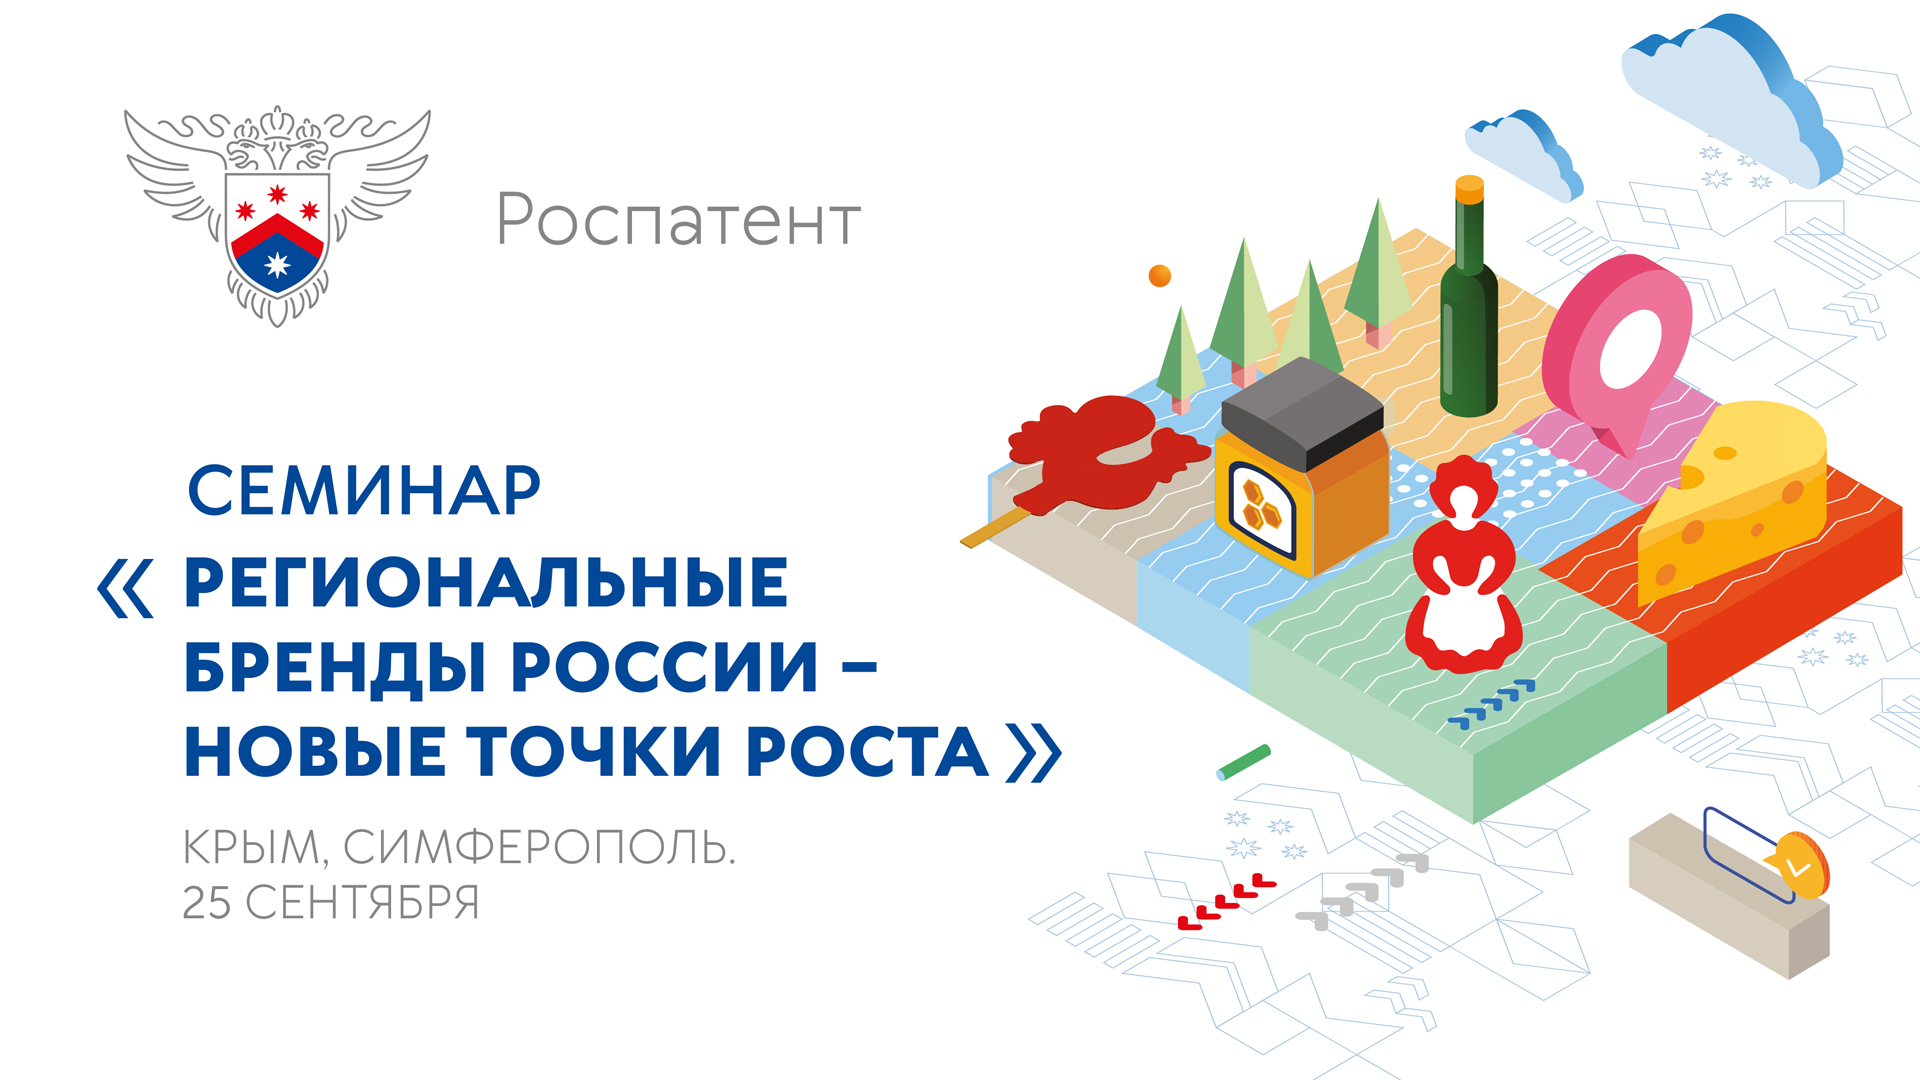 25 сентября Роспатент проведет в Симферополе обучающий семинар «Региональные бренды России – новые точки роста»